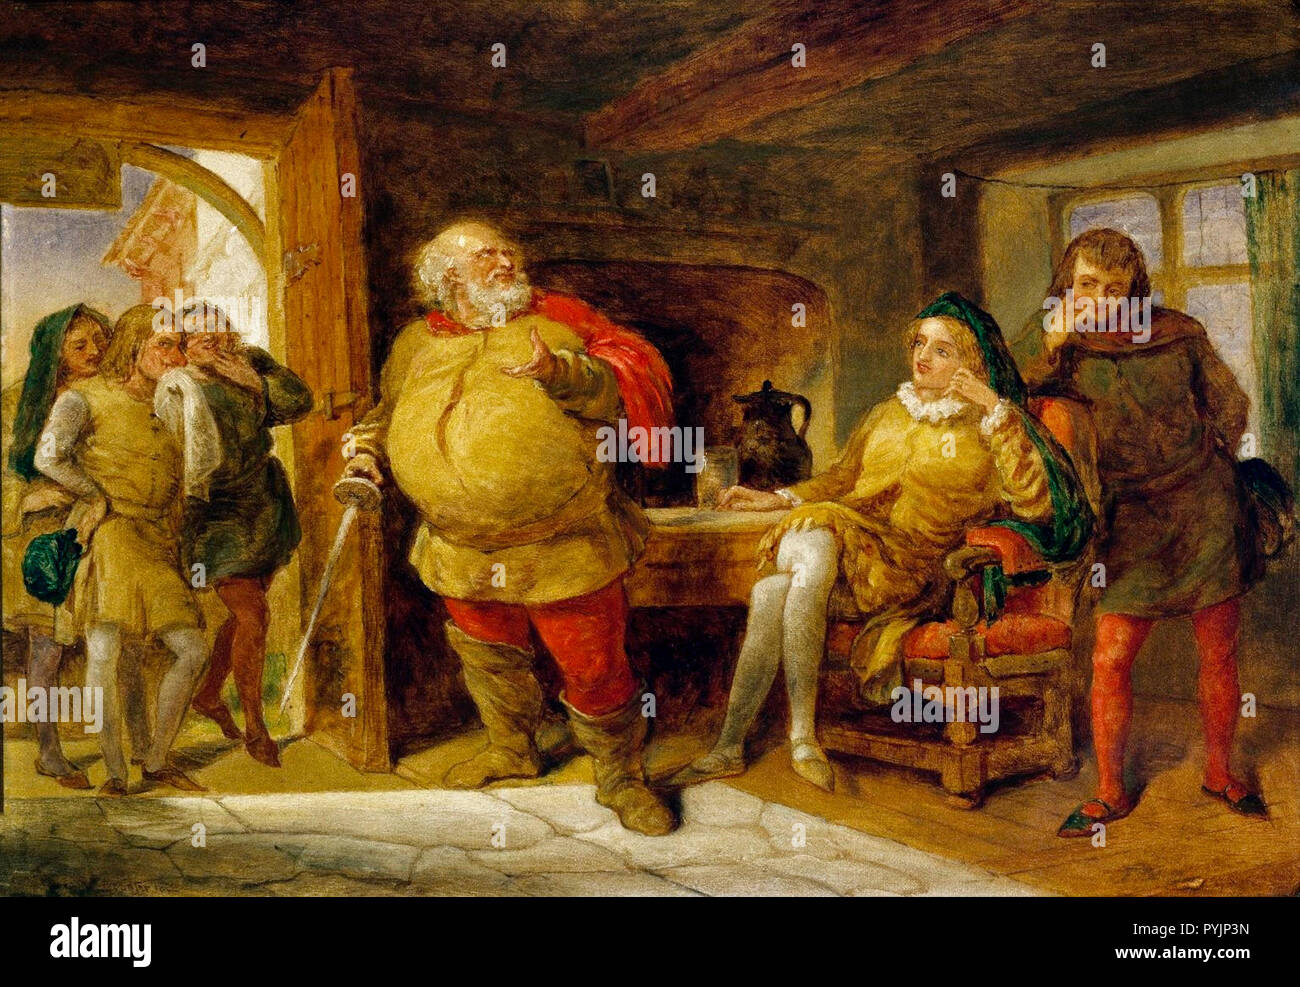 Peto, Bardolph y Gadshill a izquierda; Falstaff en el centro; Hal y Poins a la derecha en la Taberna de la cabeza del jabalí. Ilustración de Enrique IV, Parte 1, Acto 2, escena 4. Artista desconocido, c.1840 Foto de stock